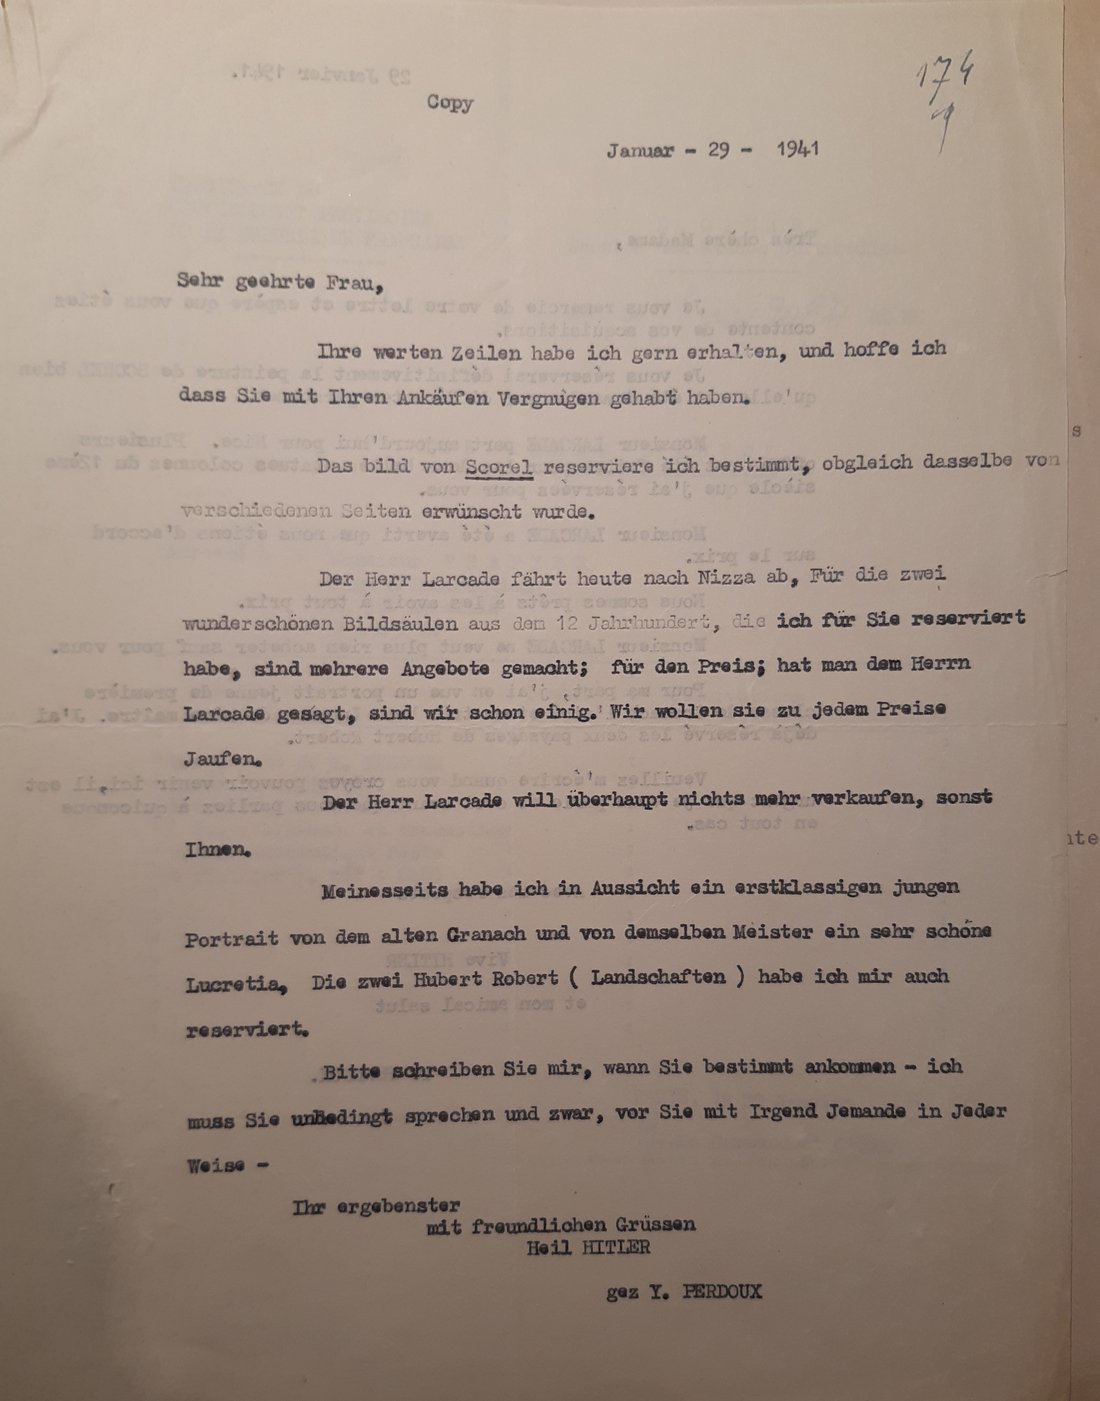 Lettre de Yves Perdoux à Maria Almas-Dietrich, 29 janvier 1941, traduction française certifiée conforme établie dans le cadre de la procédure judiciaire. Source : Archives nationales, Z/6/577.